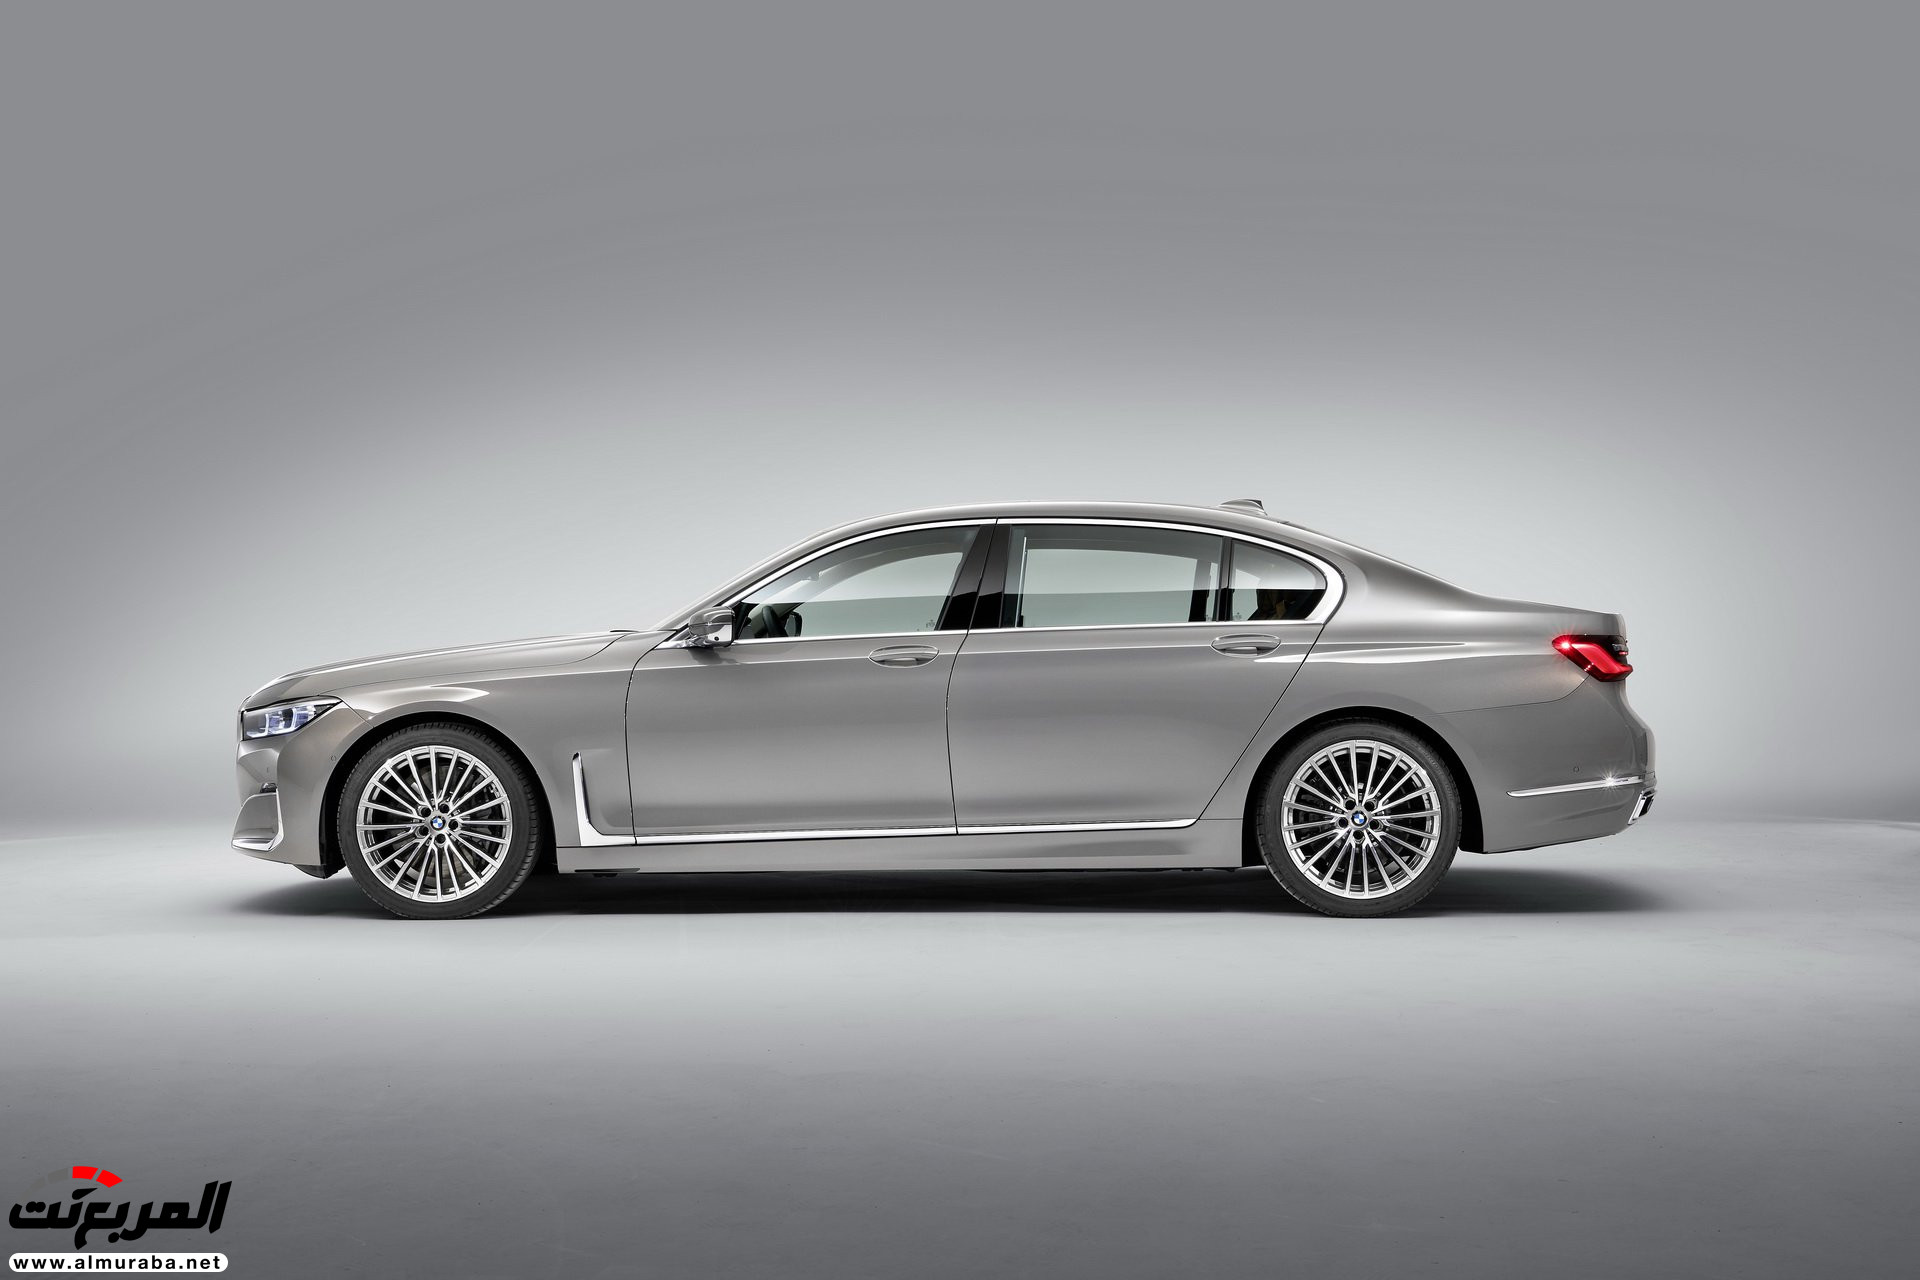 بي ام دبليو الفئة السابعة 2020 المحدثة تكشف نفسها رسمياً "صور ومواصفات" BMW 7 Series 228